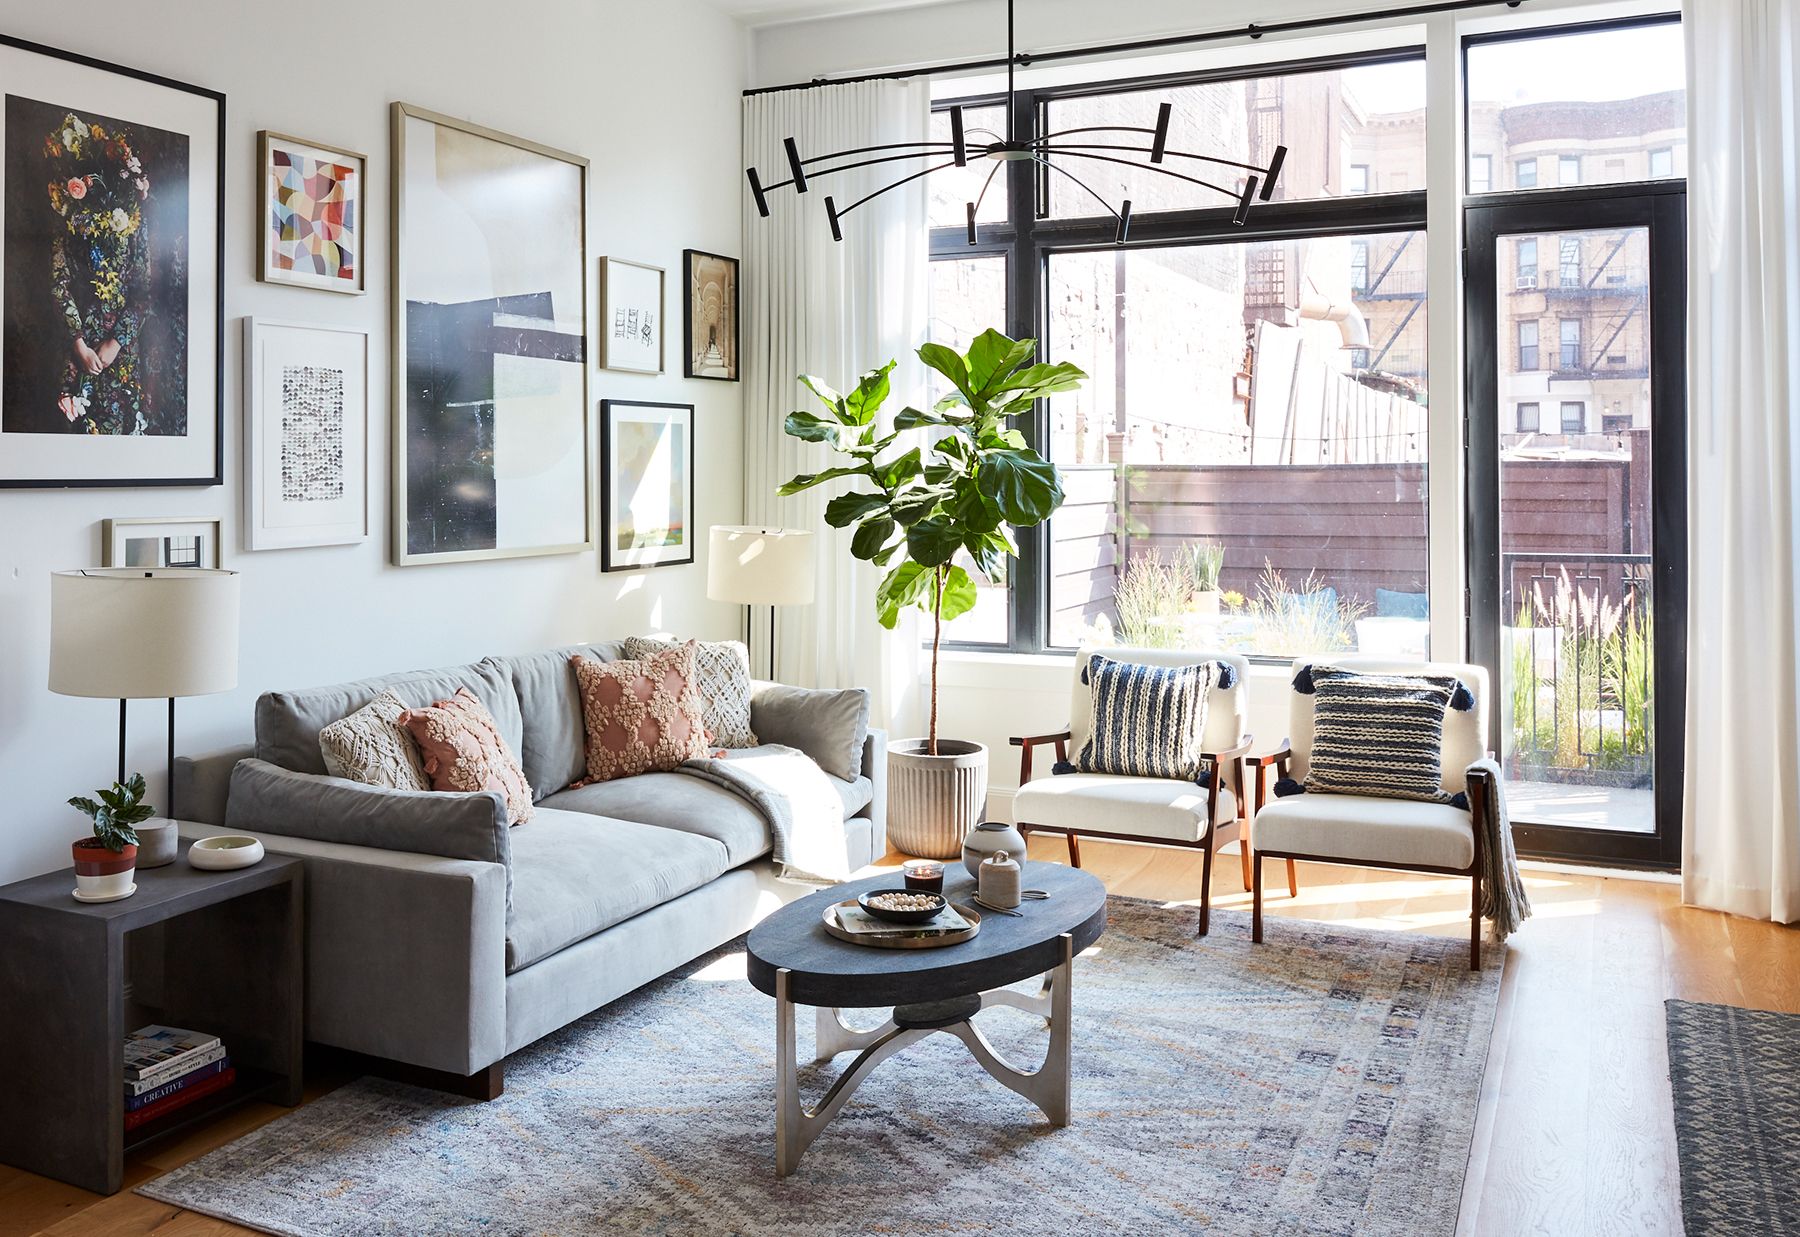 2019 Echtes einfaches Zuhause: Wohnzimmer